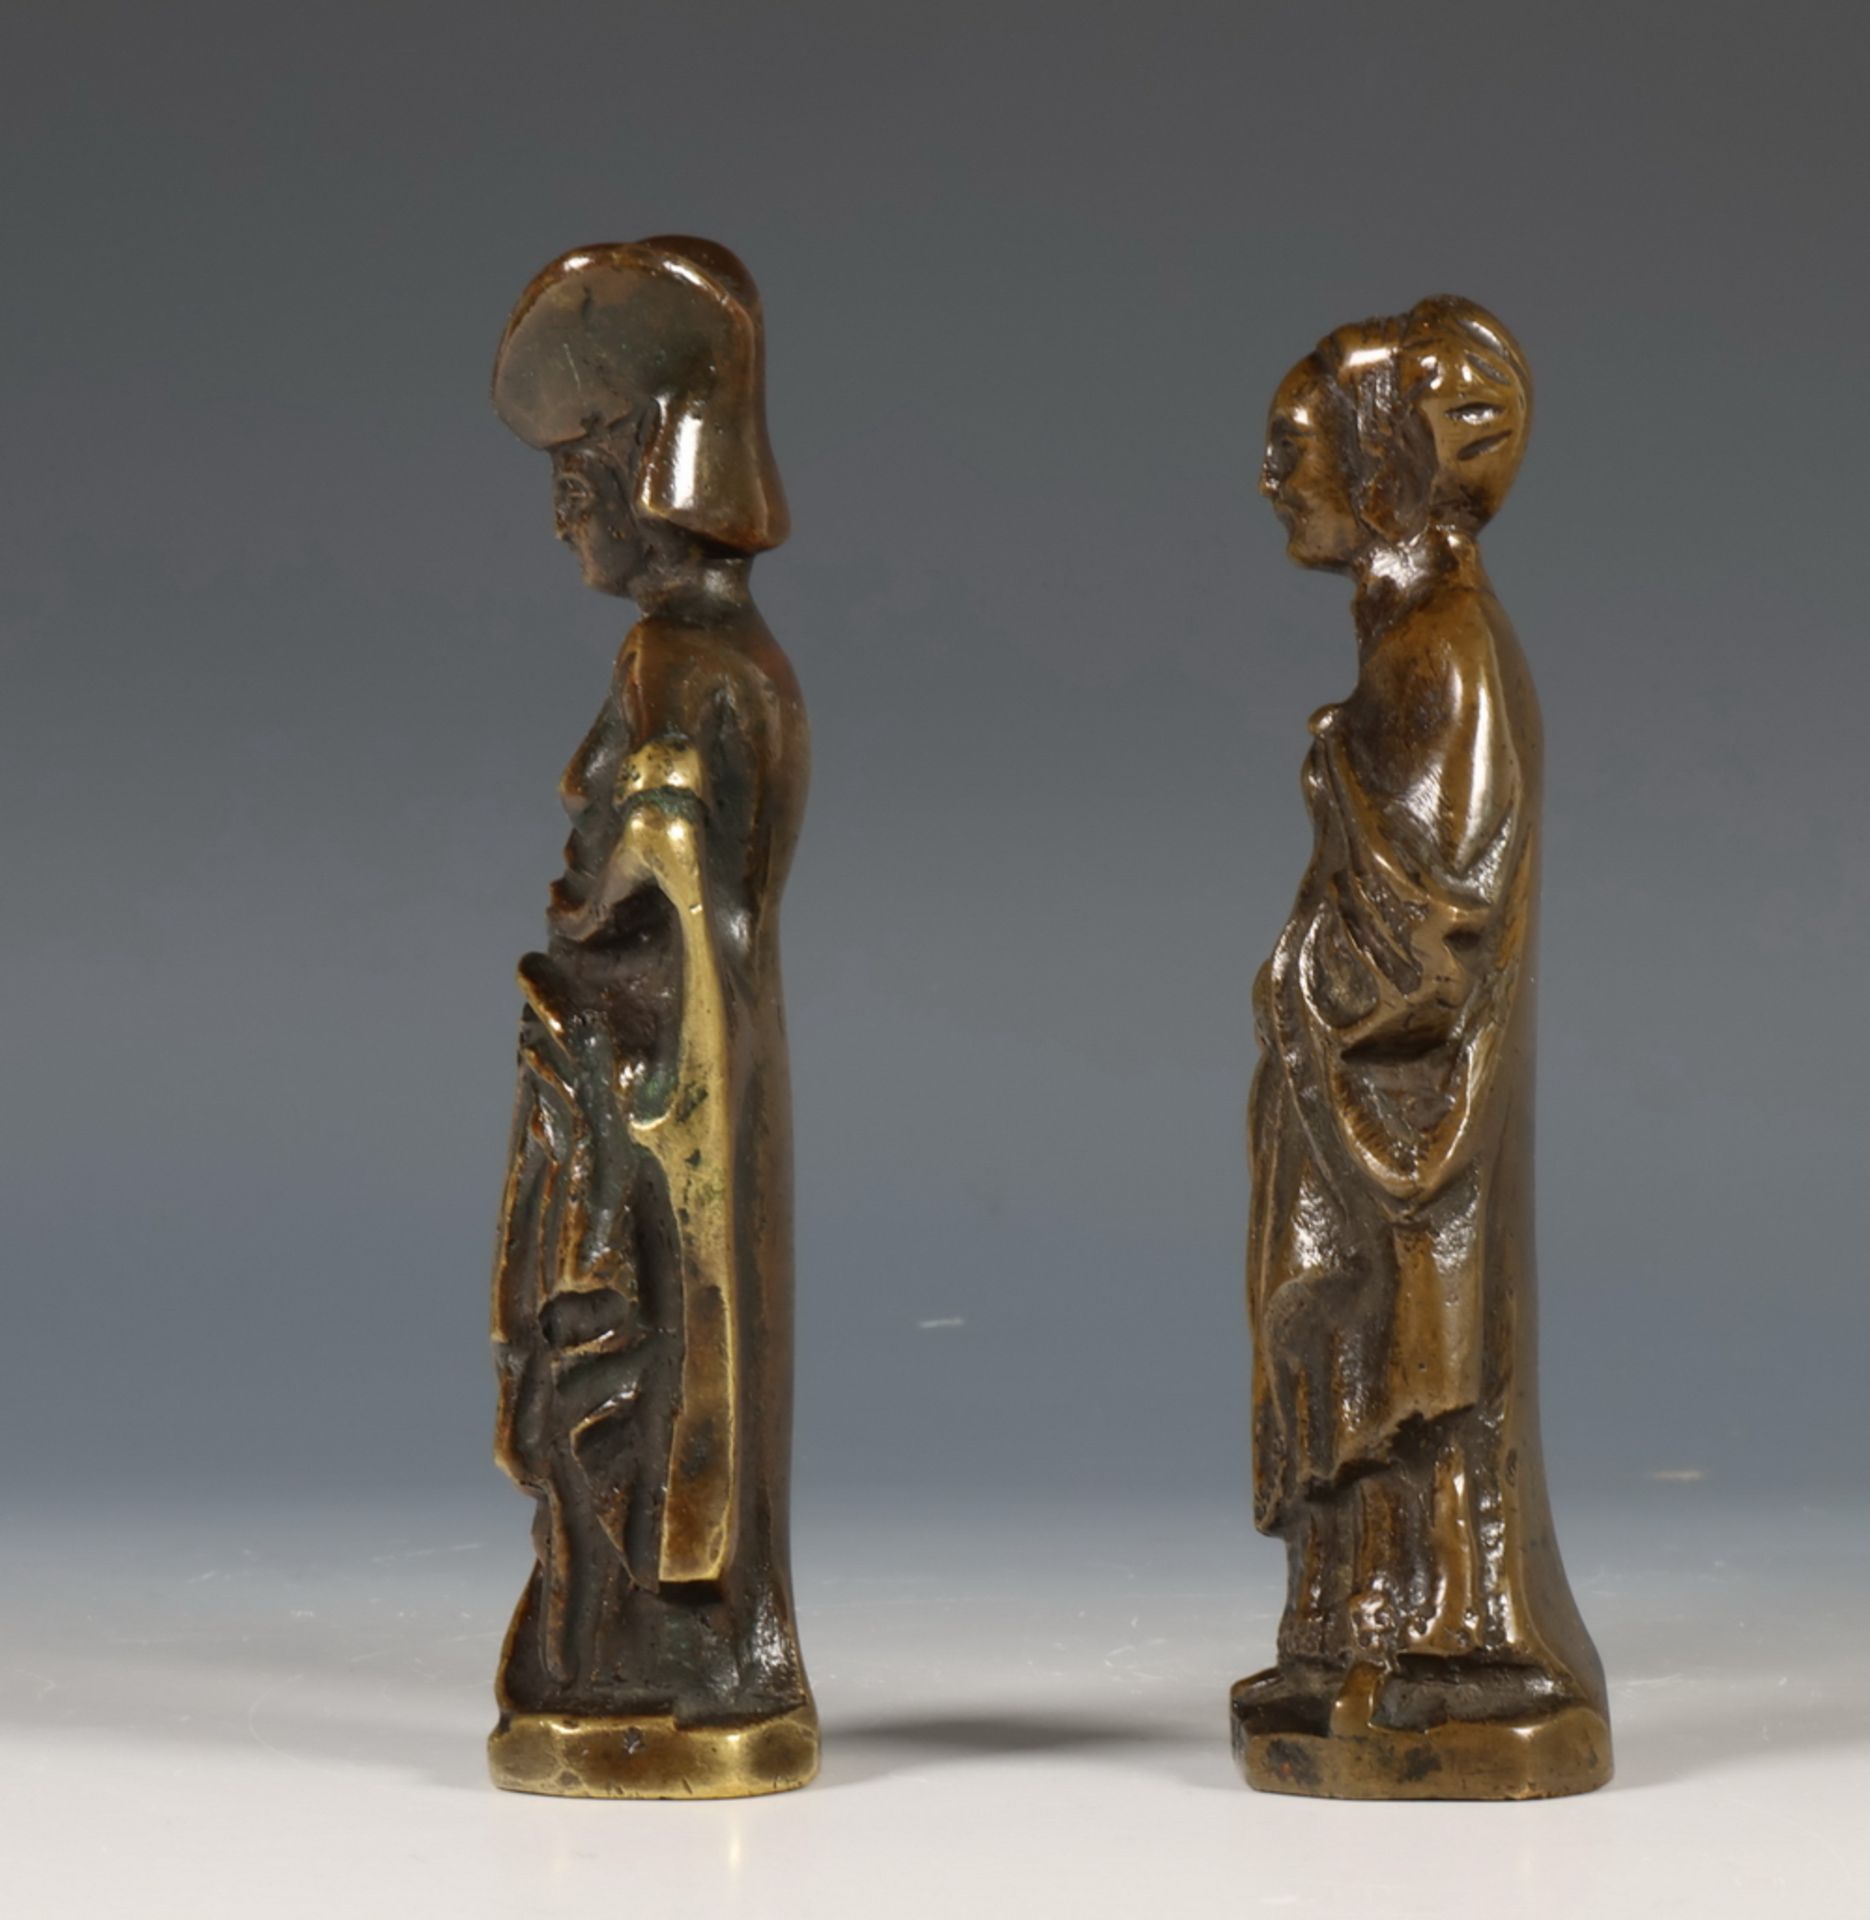 Paar bruin gepatineerd bronzen pleurantes in Middeleeuwse stijl, waarschijnlijk 18e eeuw - Bild 2 aus 5